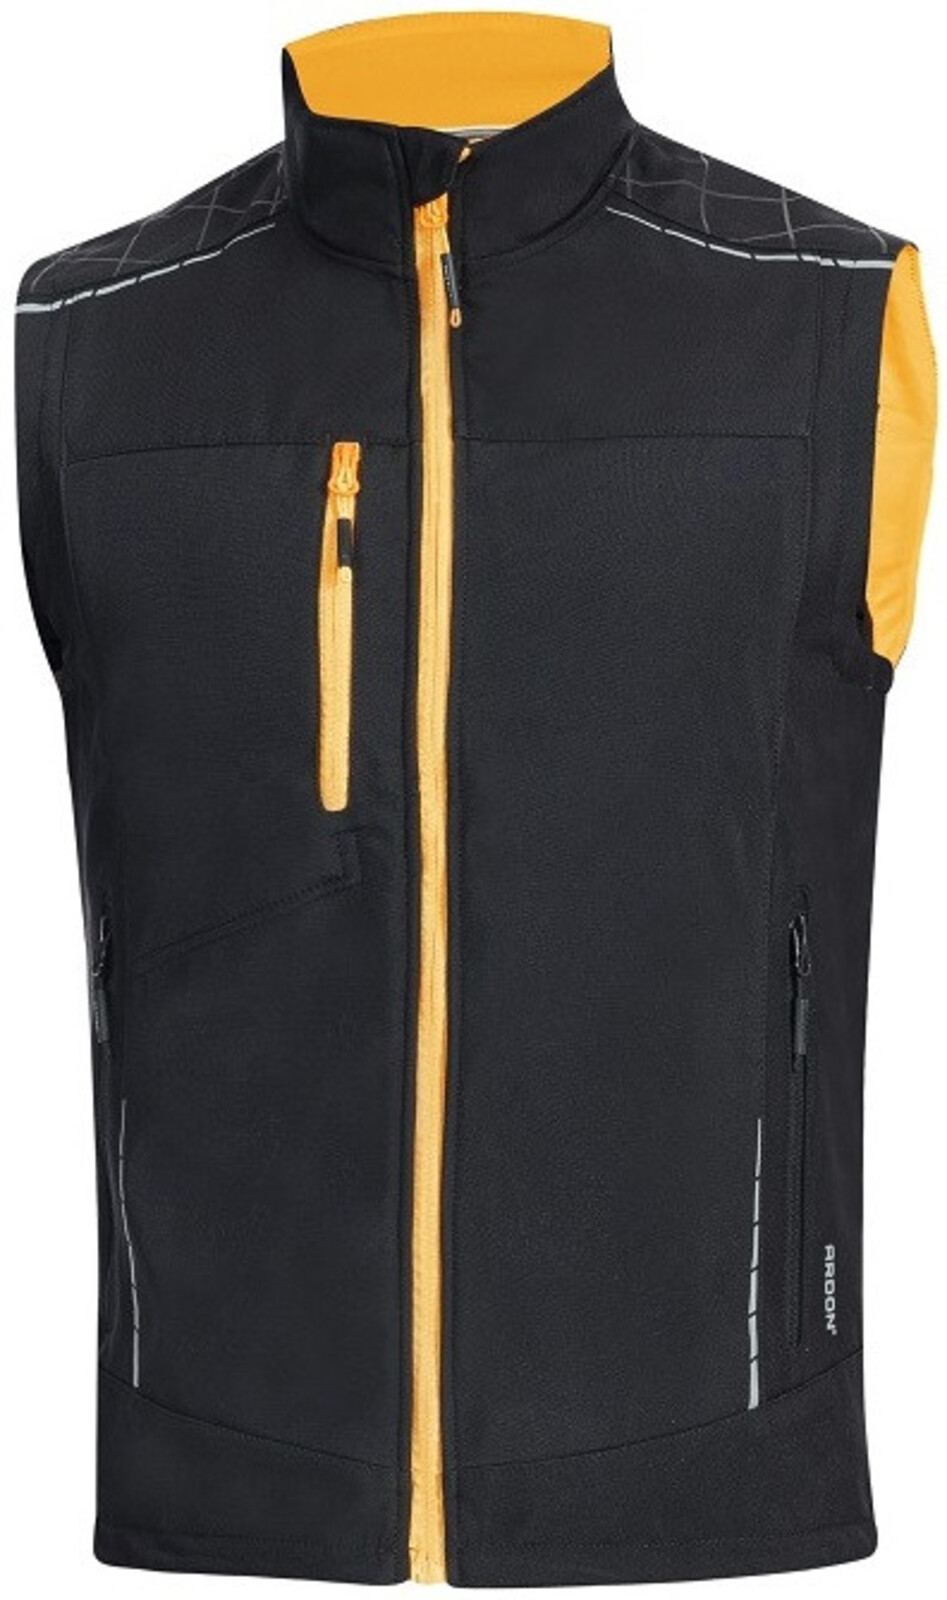 Pánska softshellová vesta Ardon Vision - veľkosť: XXL, farba: čierna/oranžová